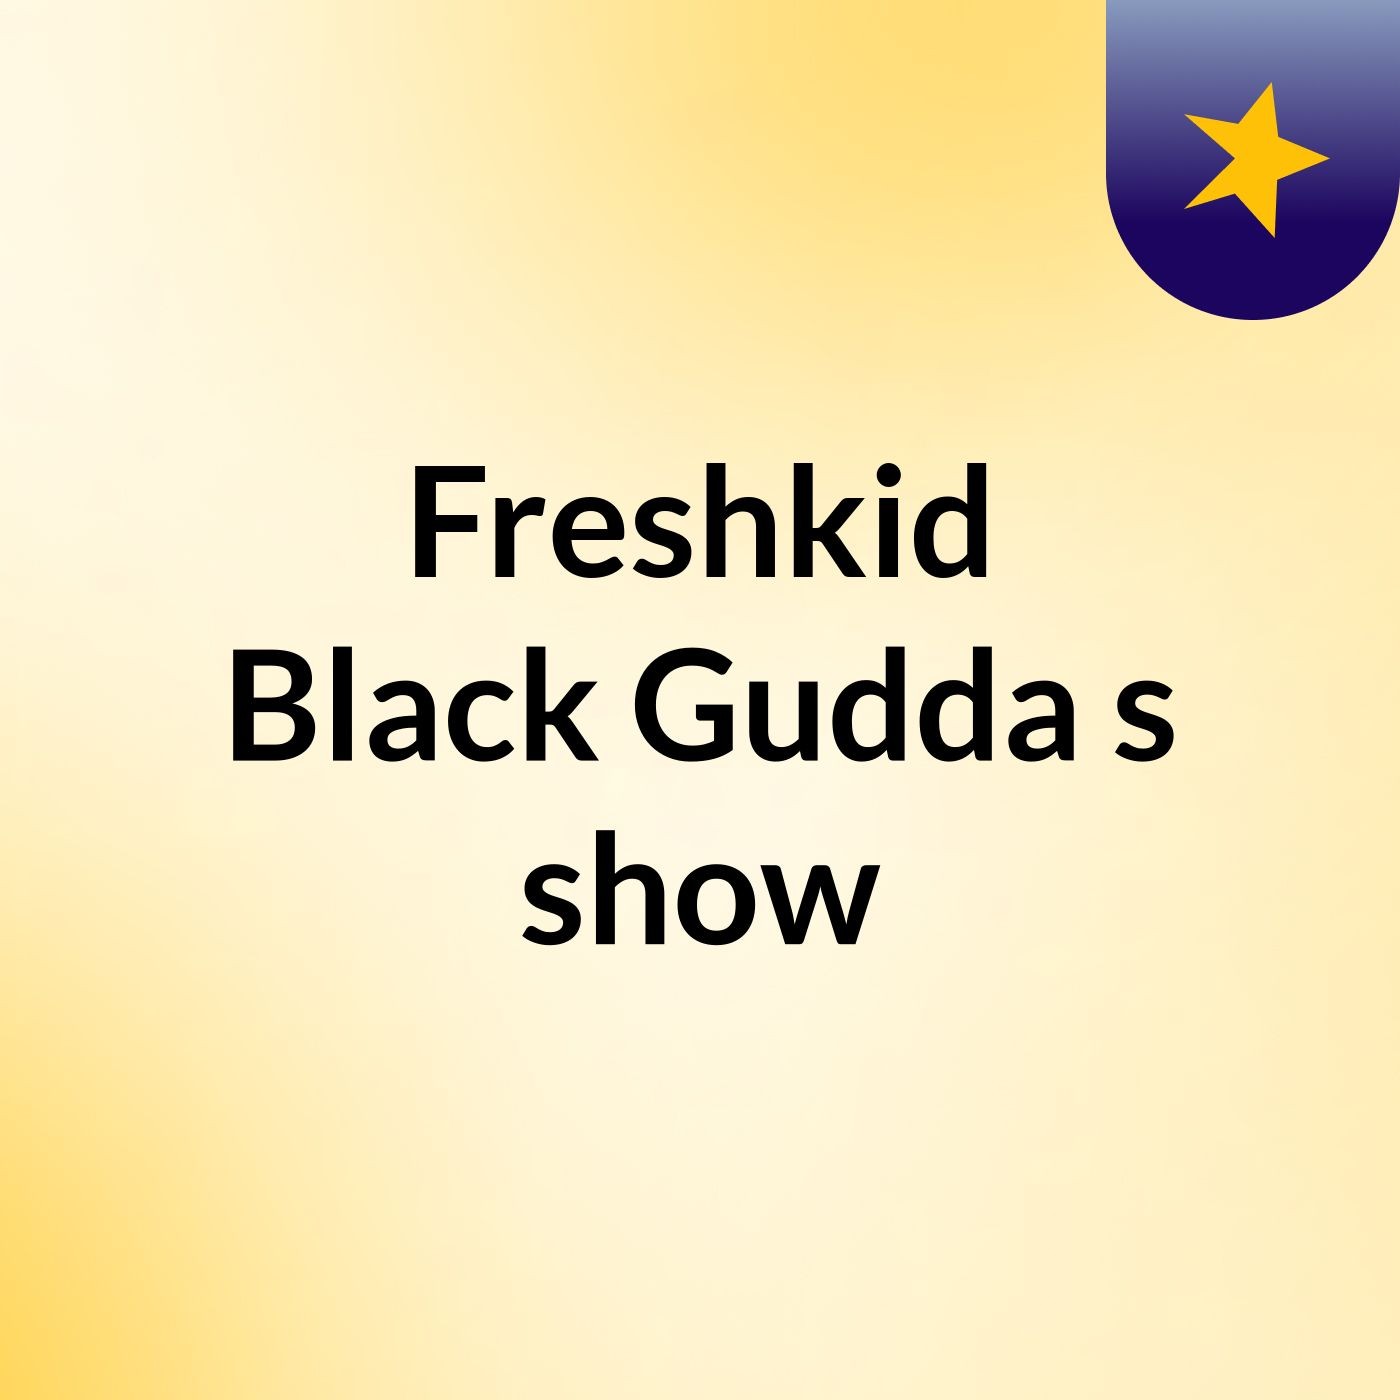 Freshkid Black Gudda's show